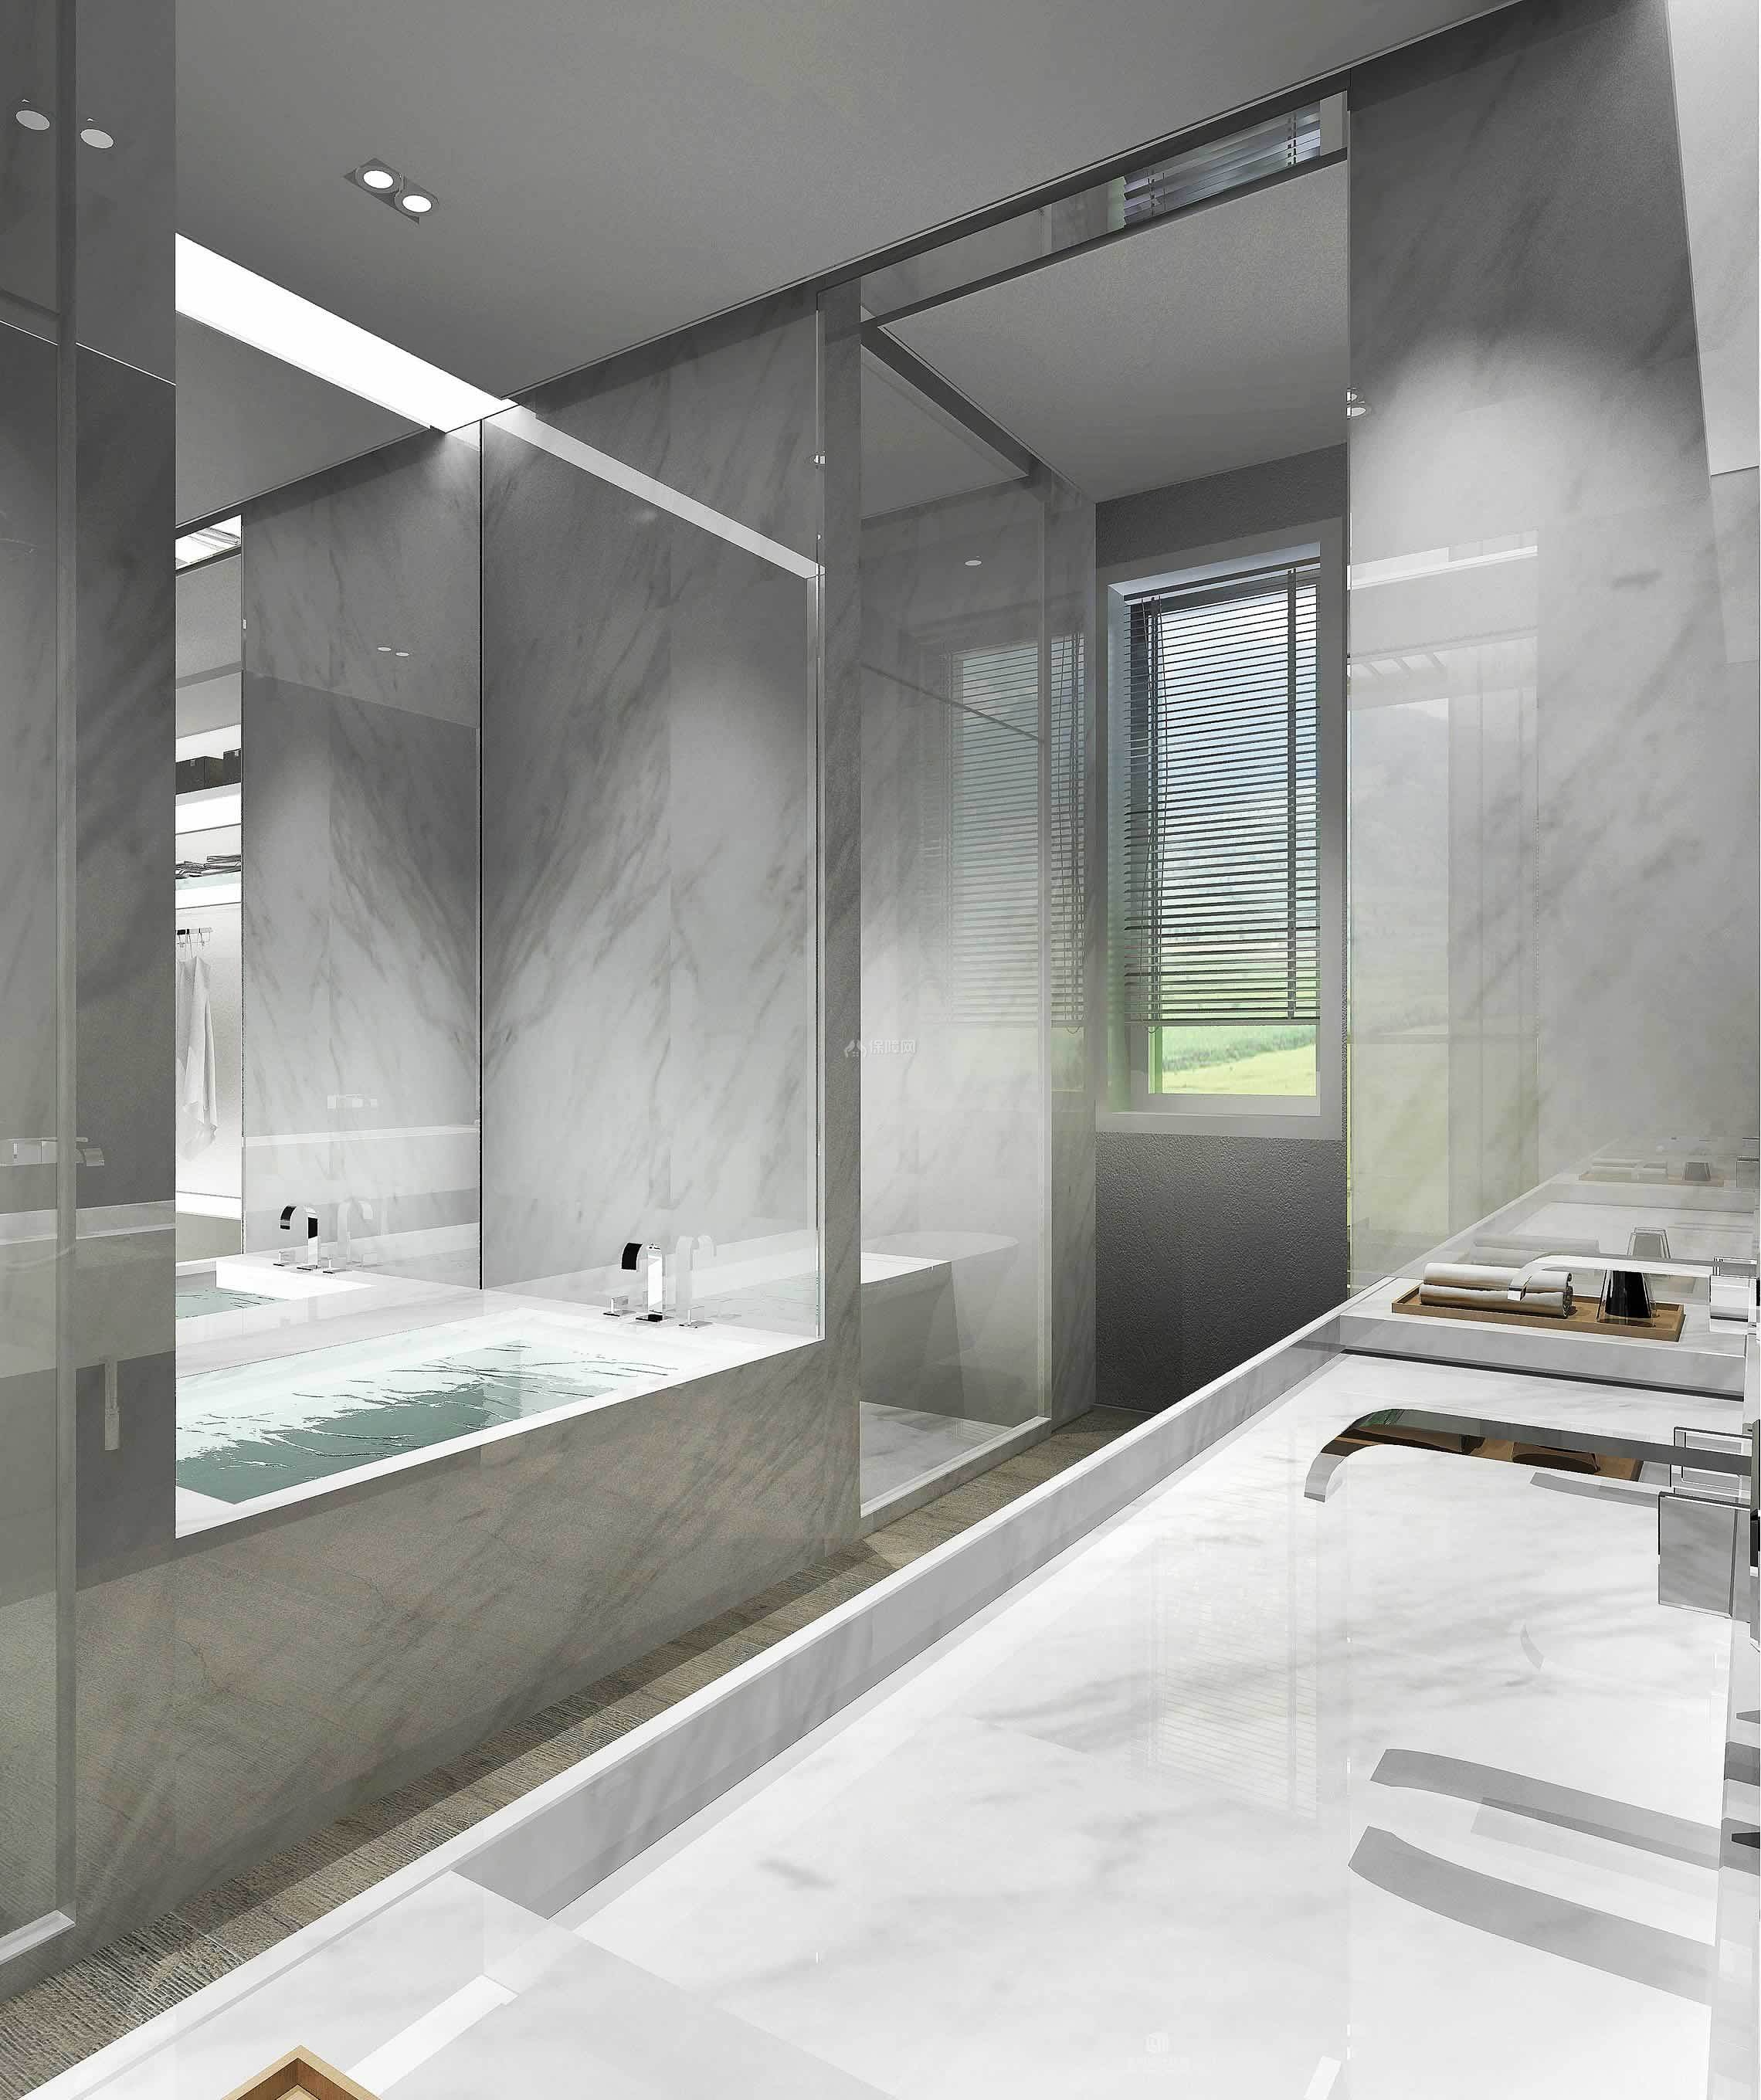 校区新建学生公寓淋浴室正式投入使用-山东科技大学泰安校区